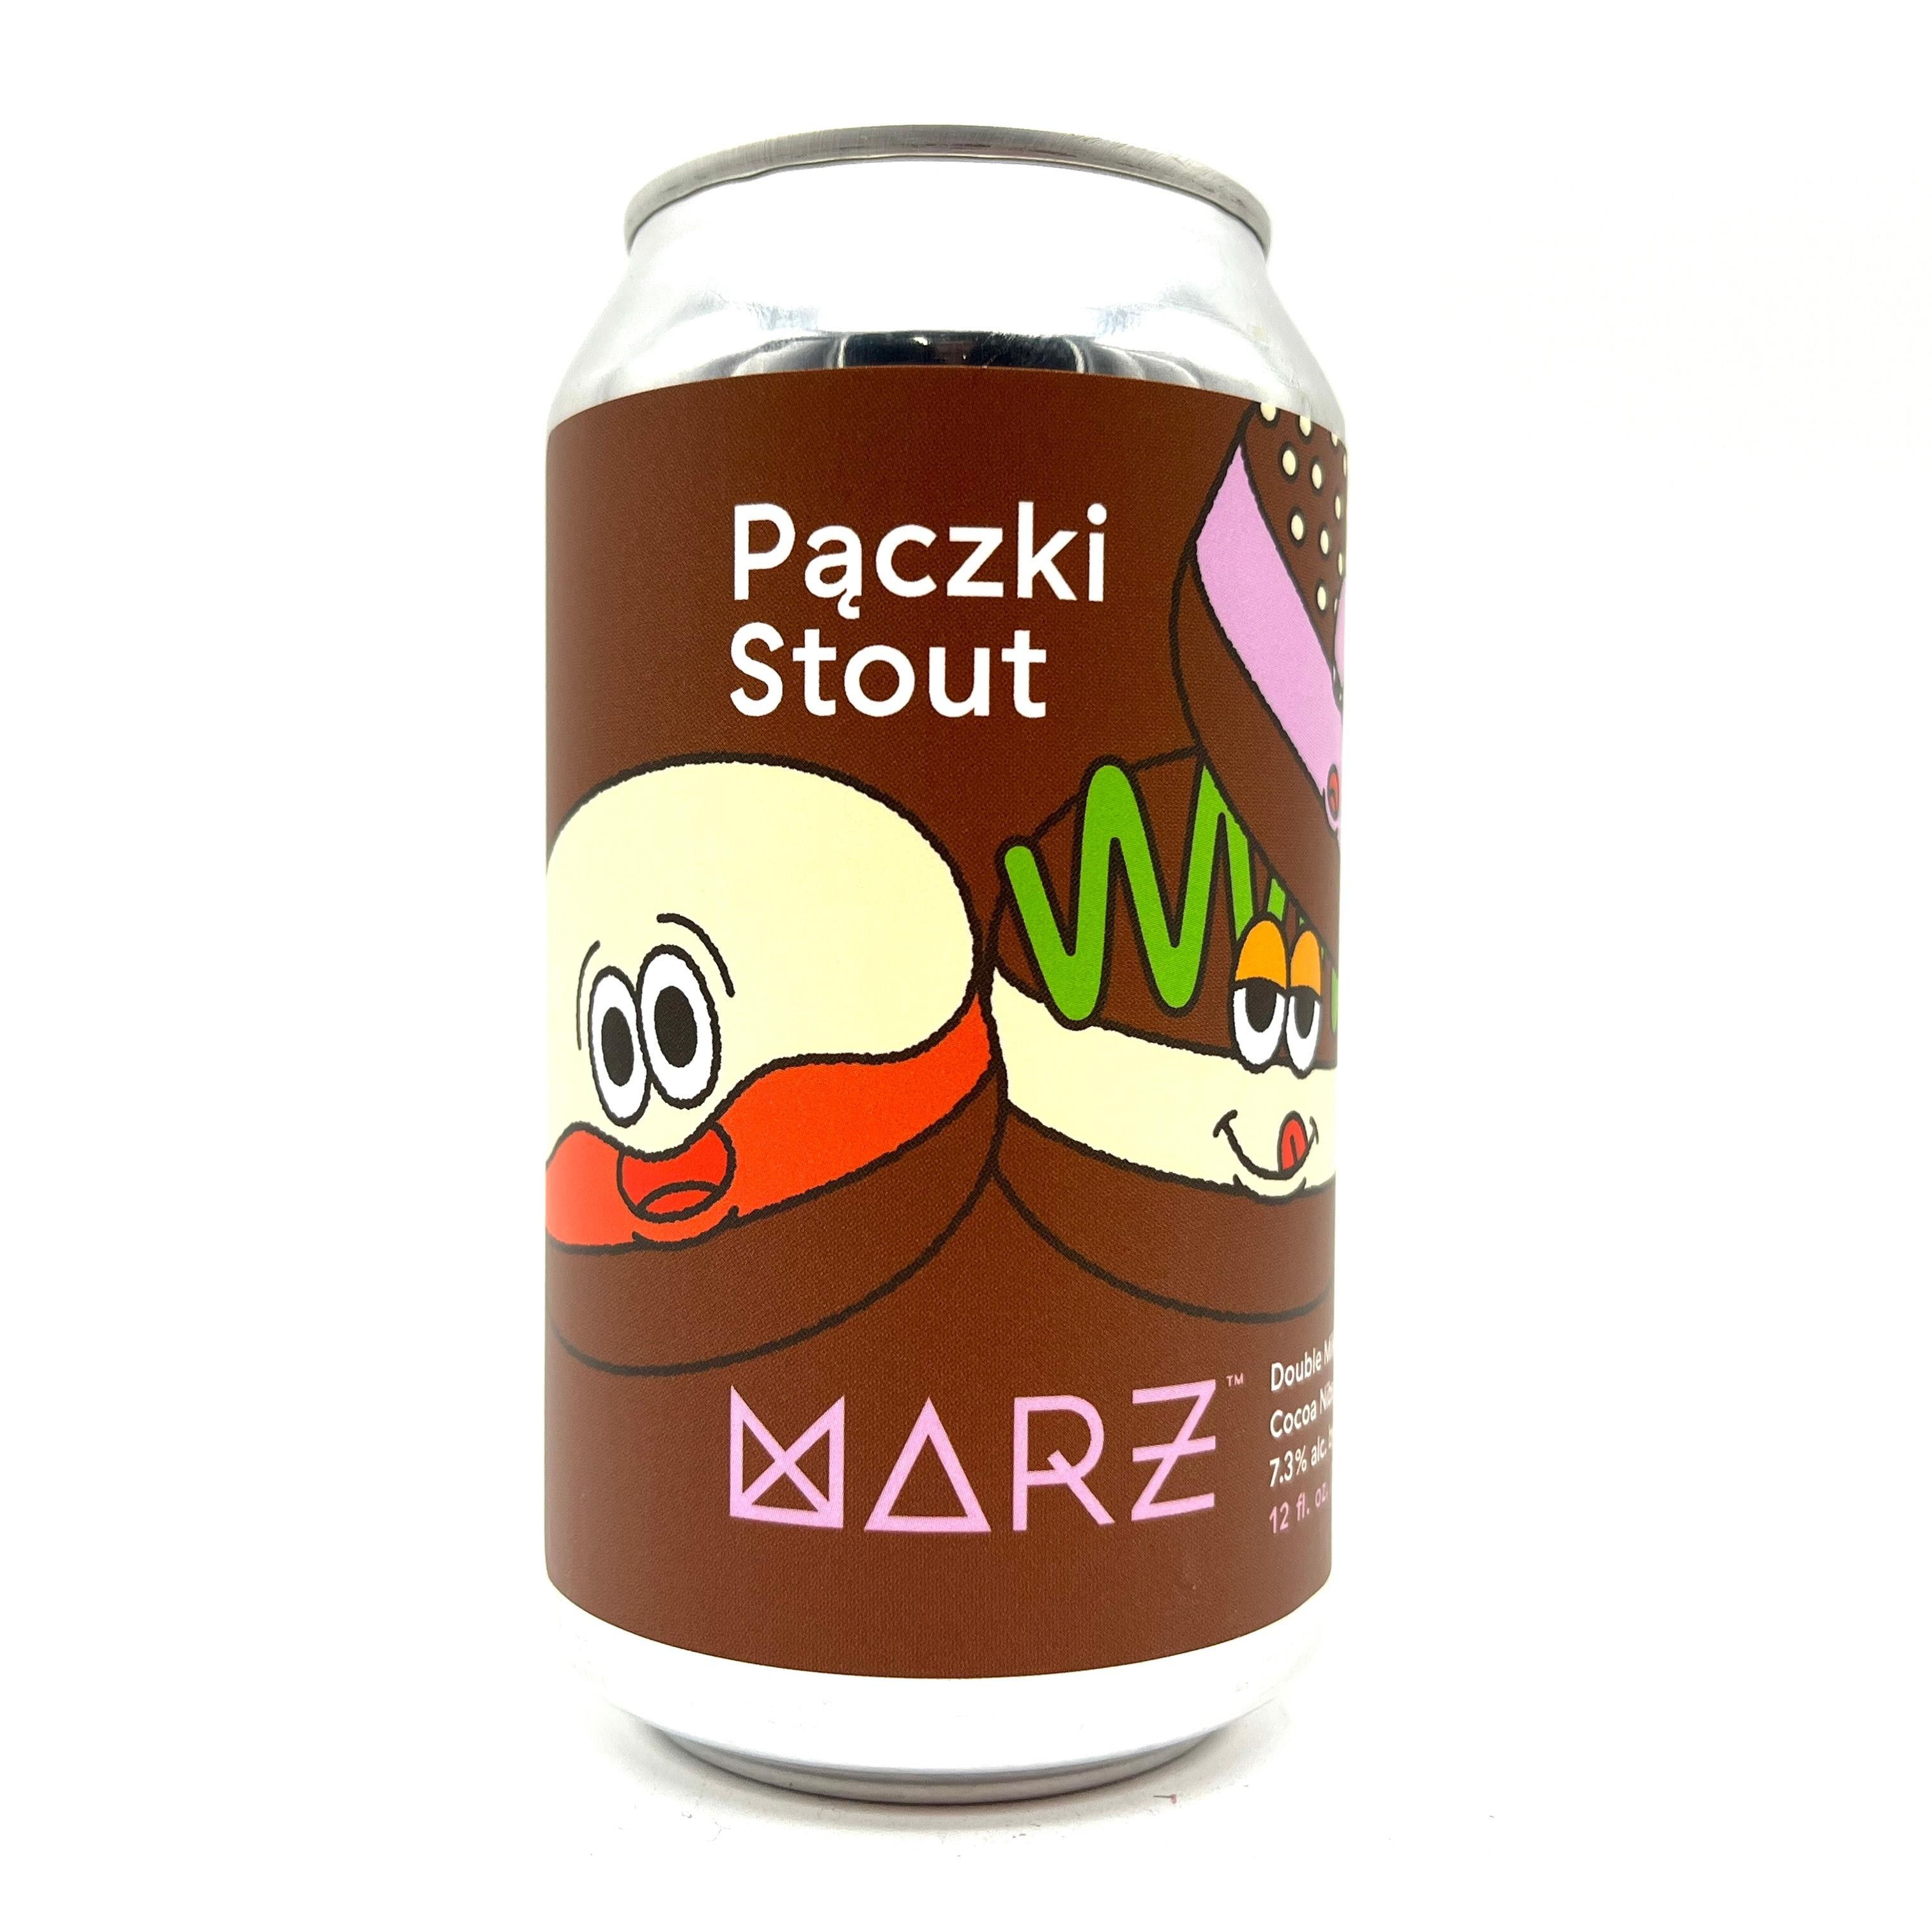 Marz - Paczki Stout